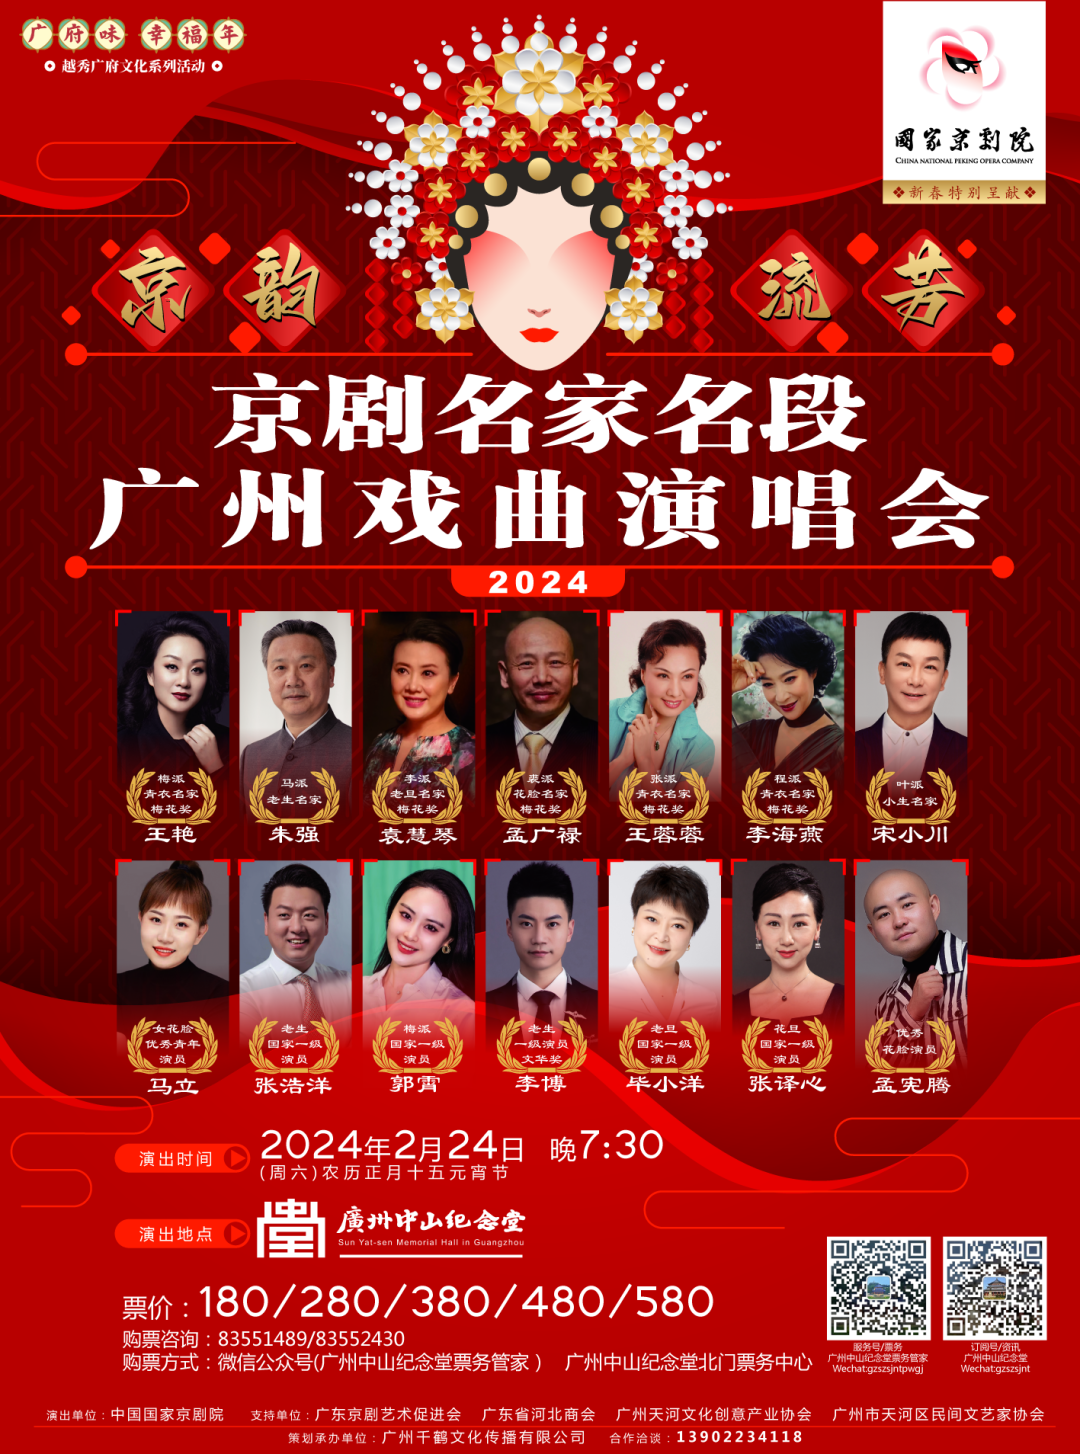 国家级京剧表演盛会将在广州中山纪念堂上演